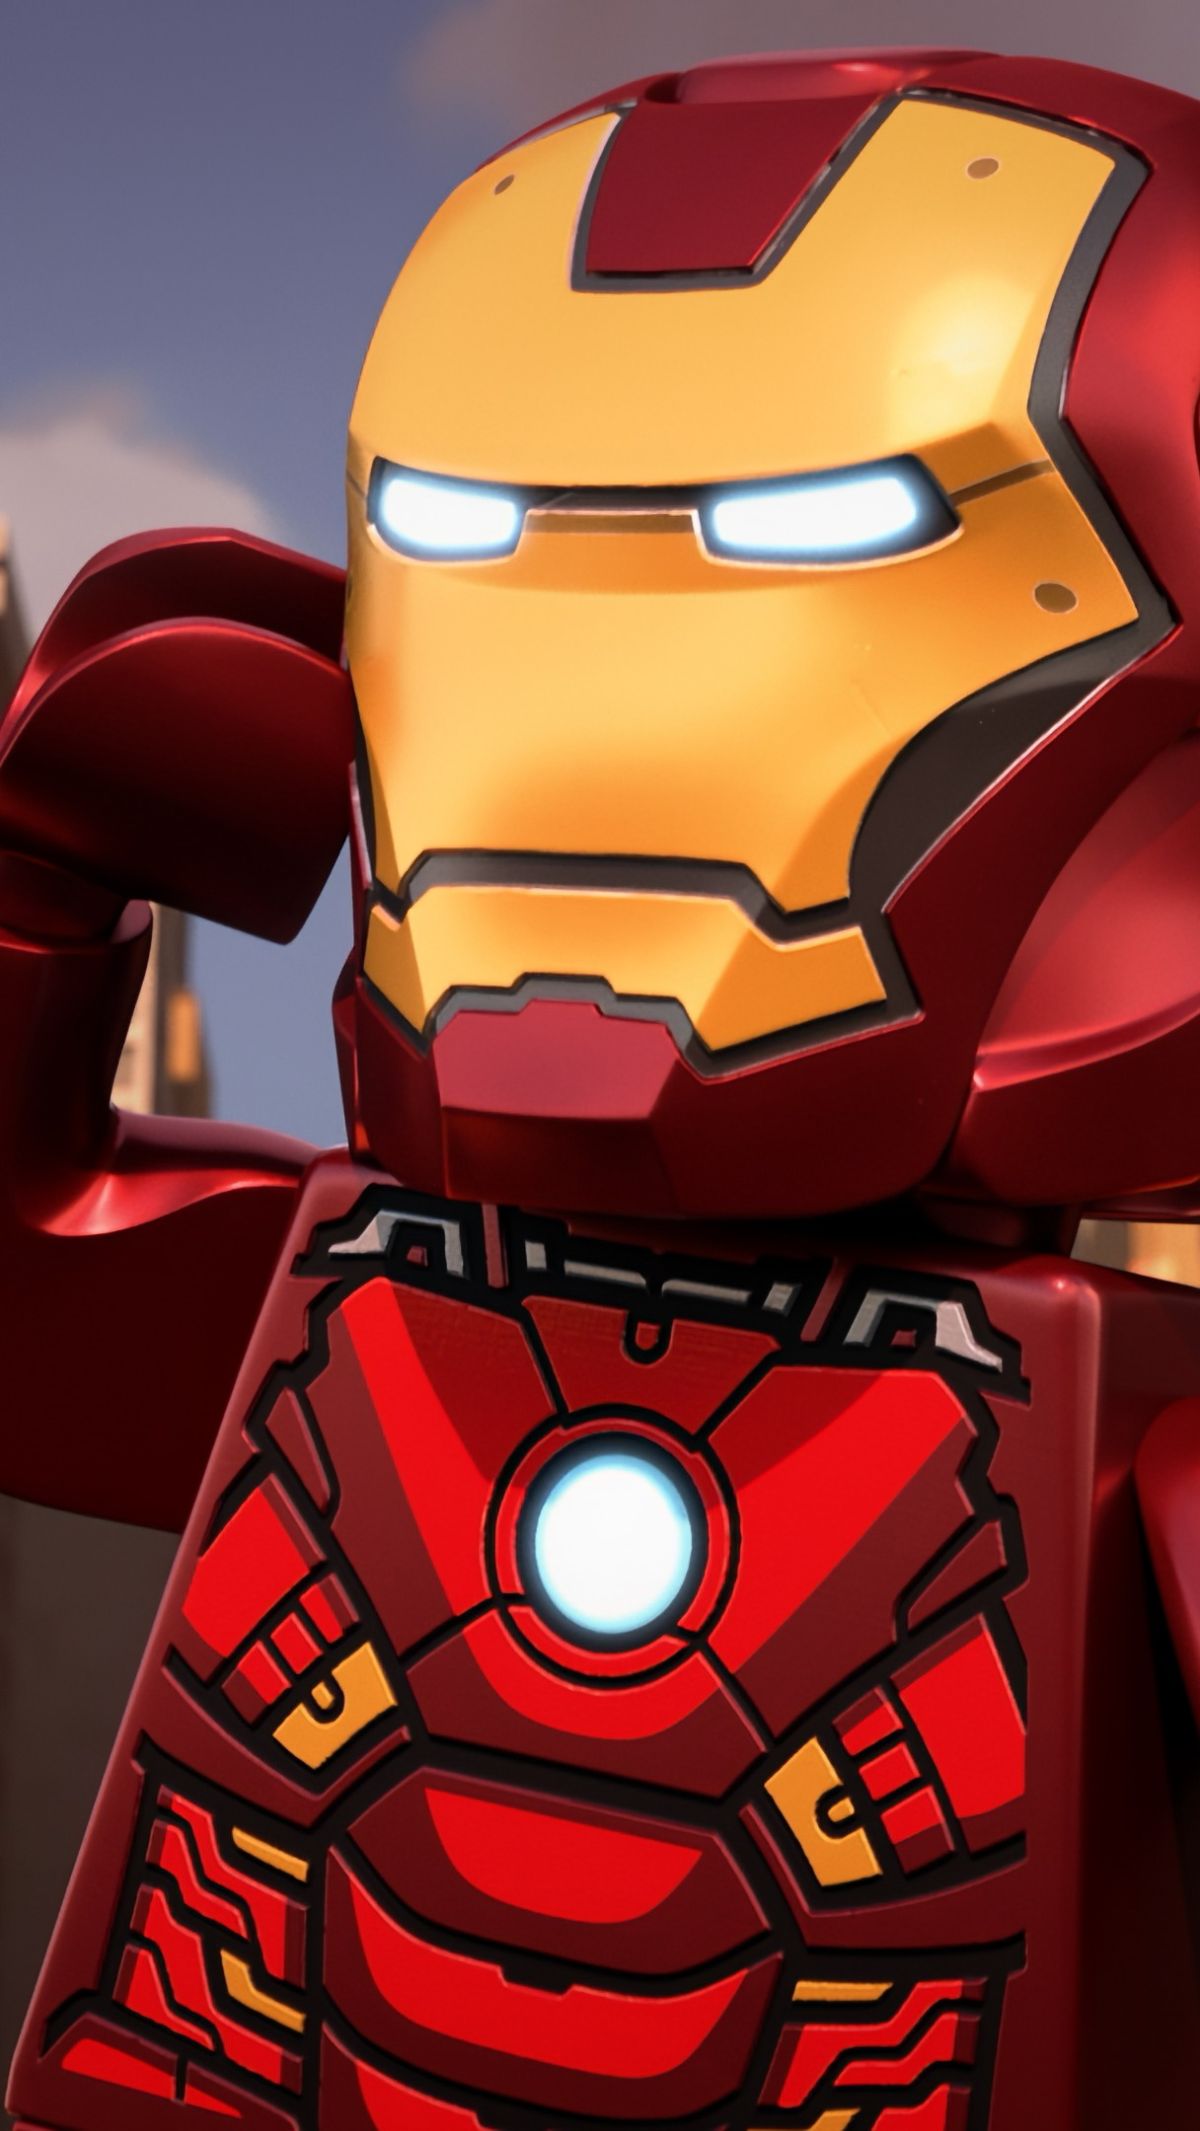 LEGO Marvel Avengers: Code Red - Disney+